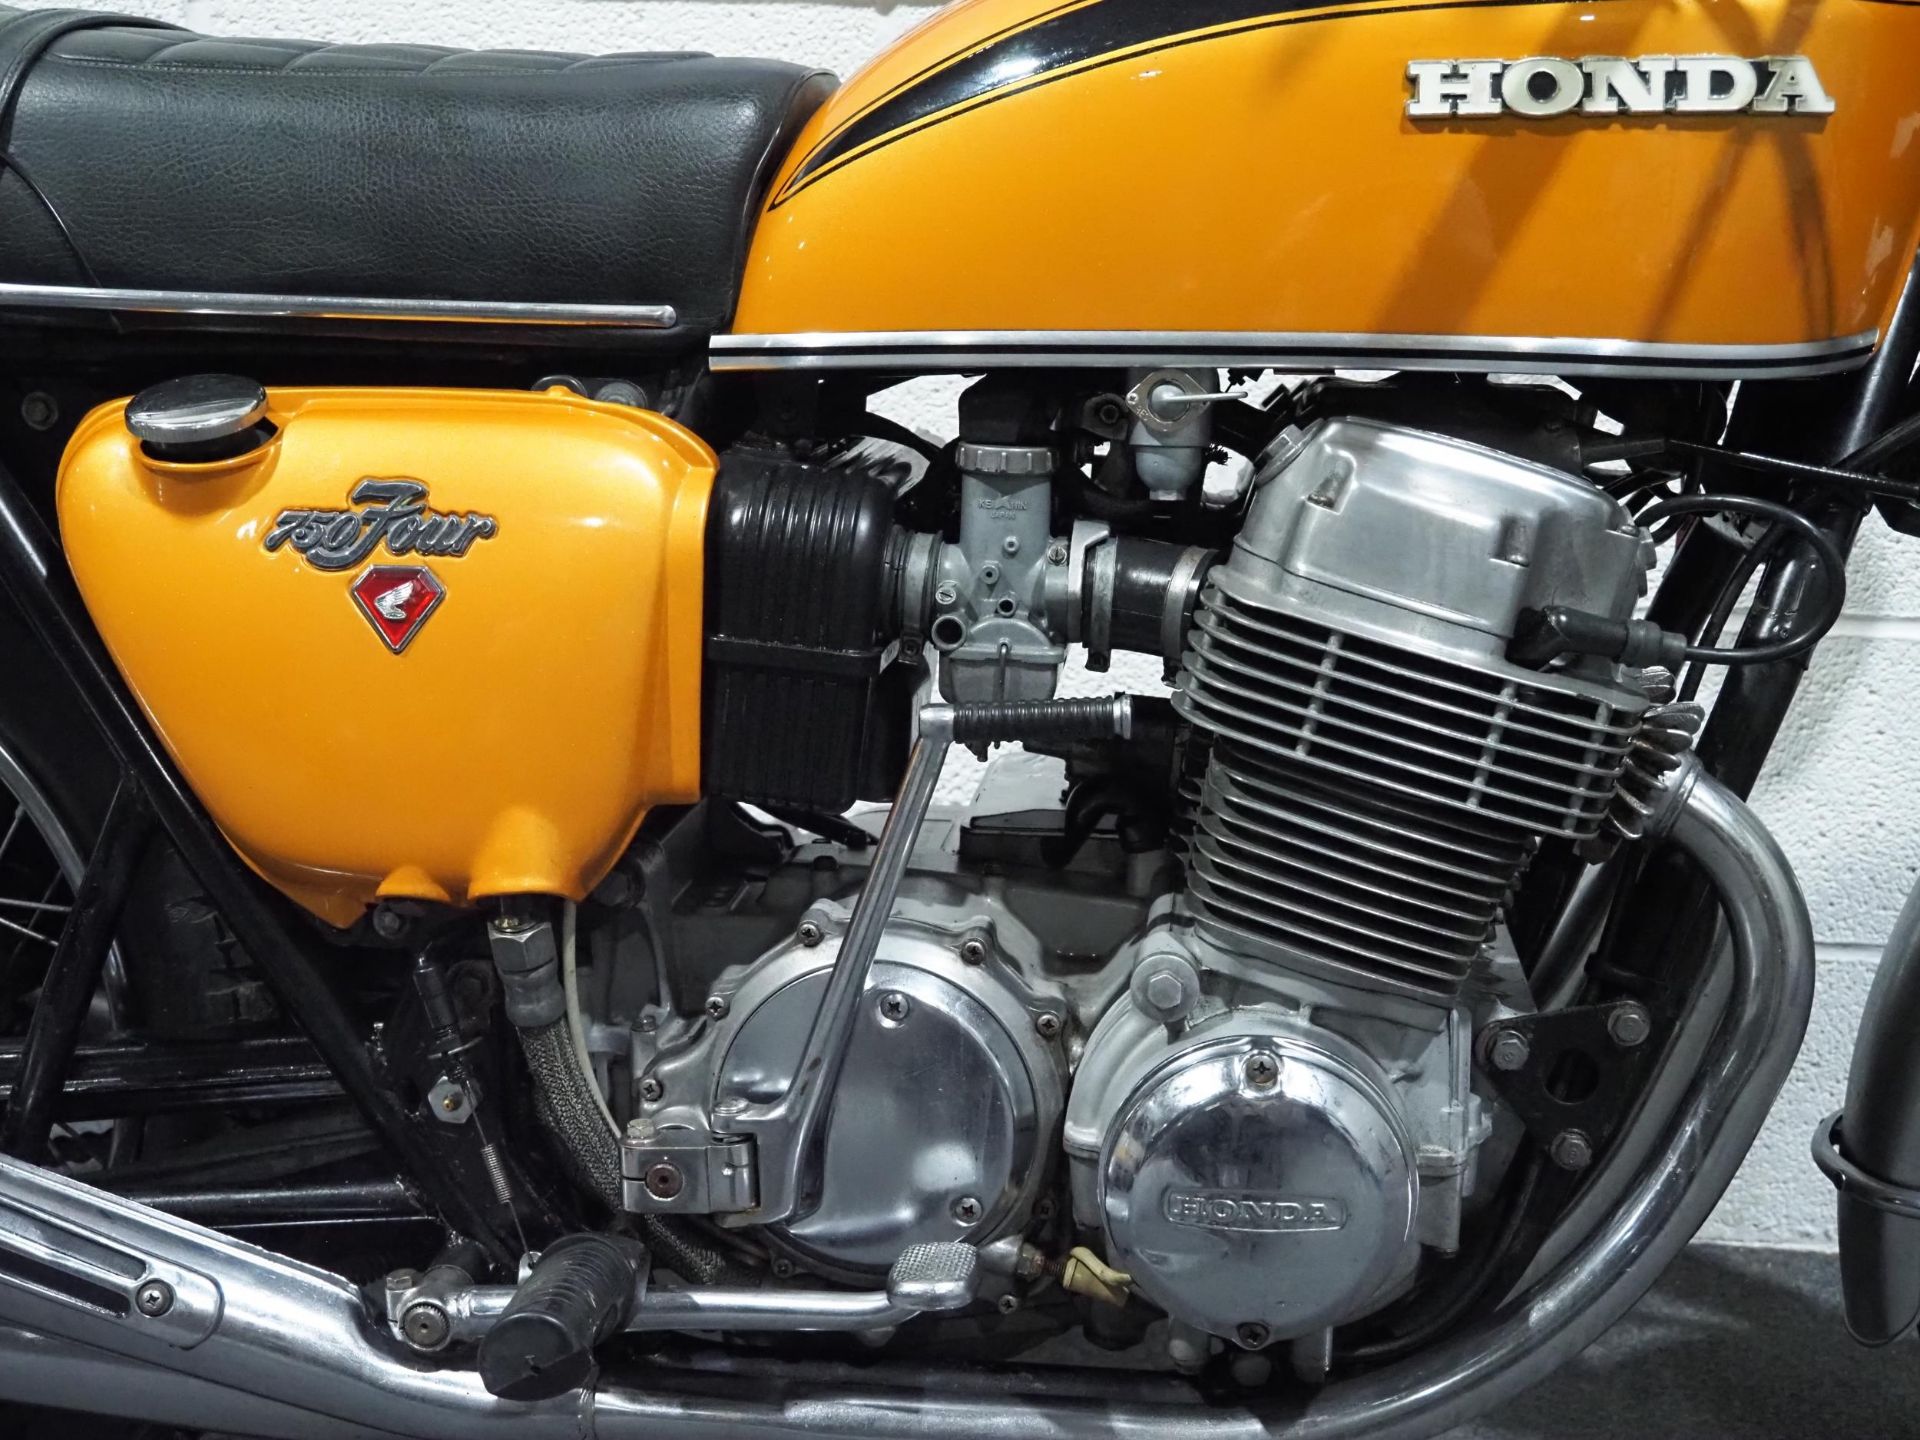 Honda 750-4 motorcycle, 1971, 750cc Frame no. CB7501118119 Engine no. CB7501117934 Runs and rides, - Image 4 of 6